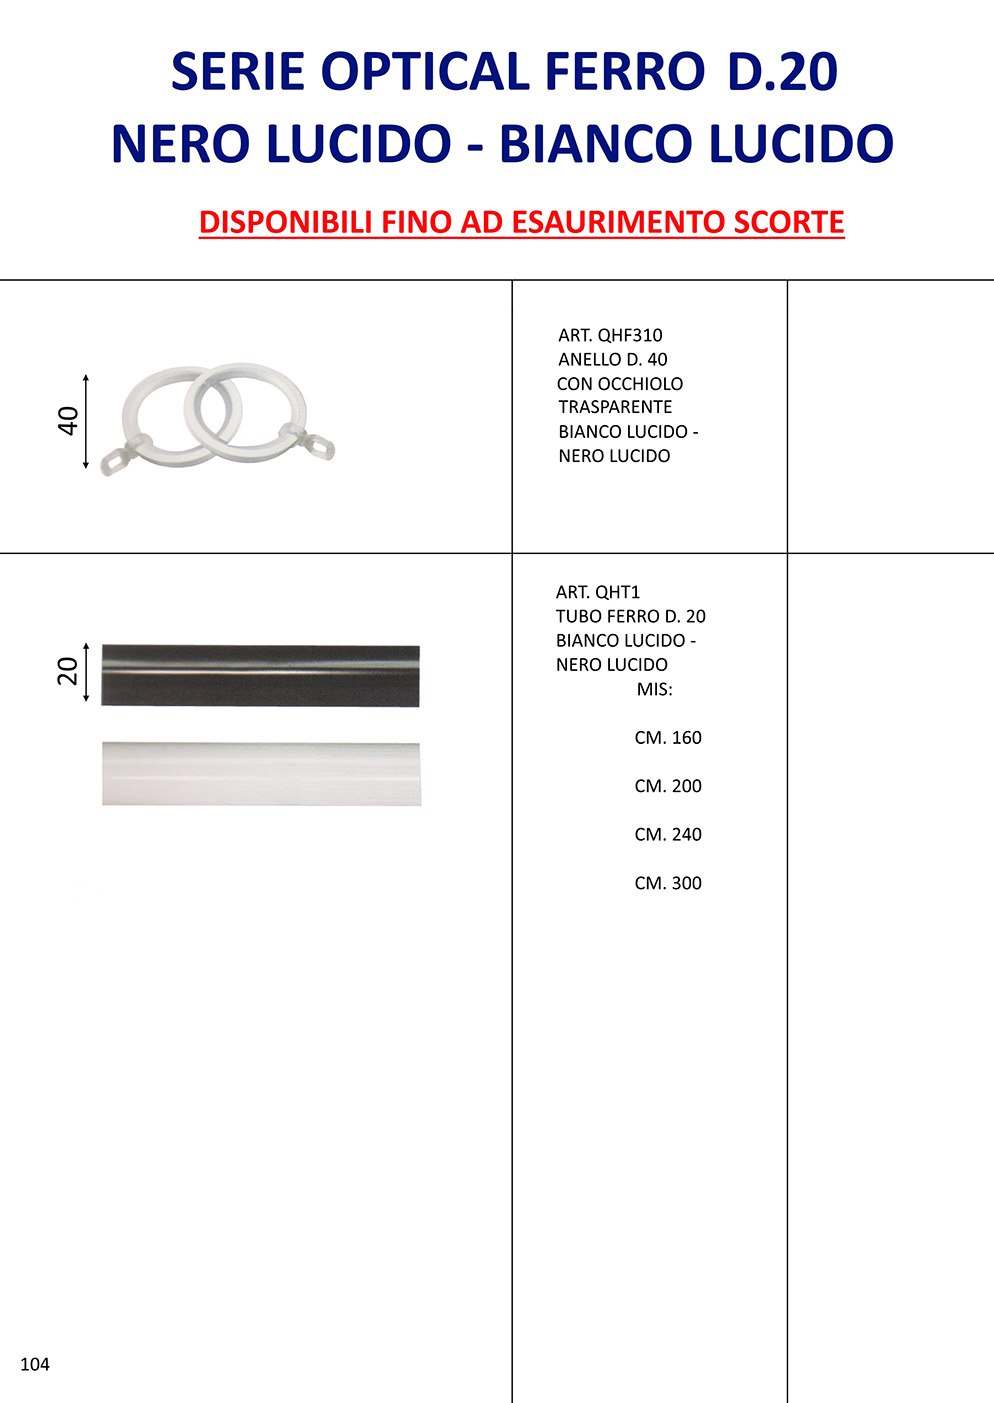 Serie Optical Ferro D.20 nero lucido - bianco lucido 1 - DISPONIBILE FINO AD ESAURIMENTO SCORTE